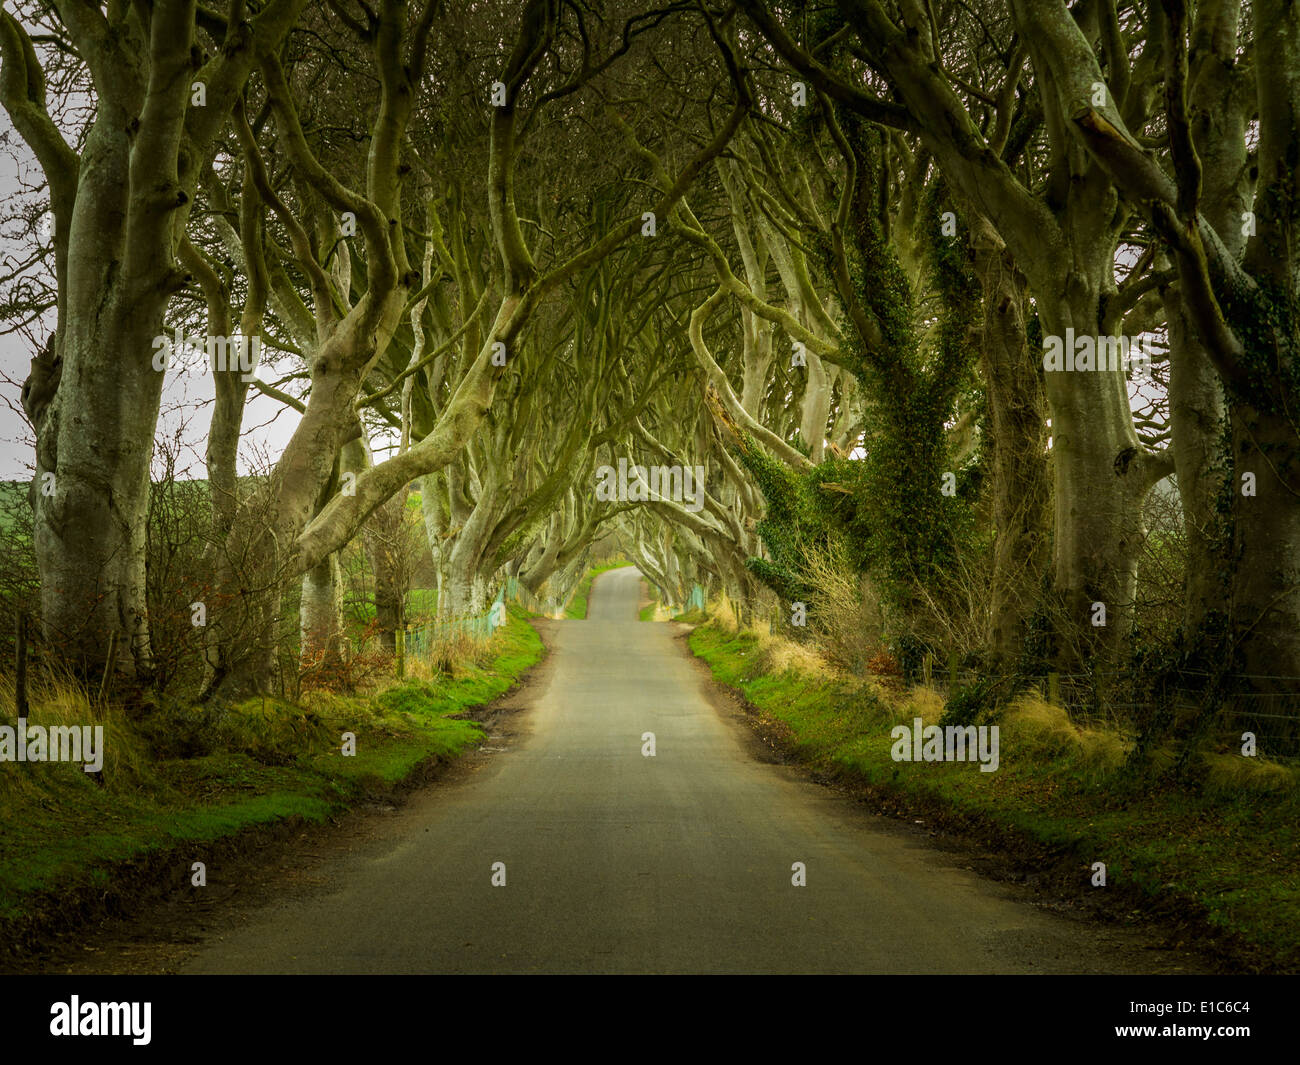 Irlande - Dark Hedges - un célèbre route bordée d'magique près de Ballymoney, comté d'Antrim, en Irlande du Nord, Royaume-Uni Banque D'Images